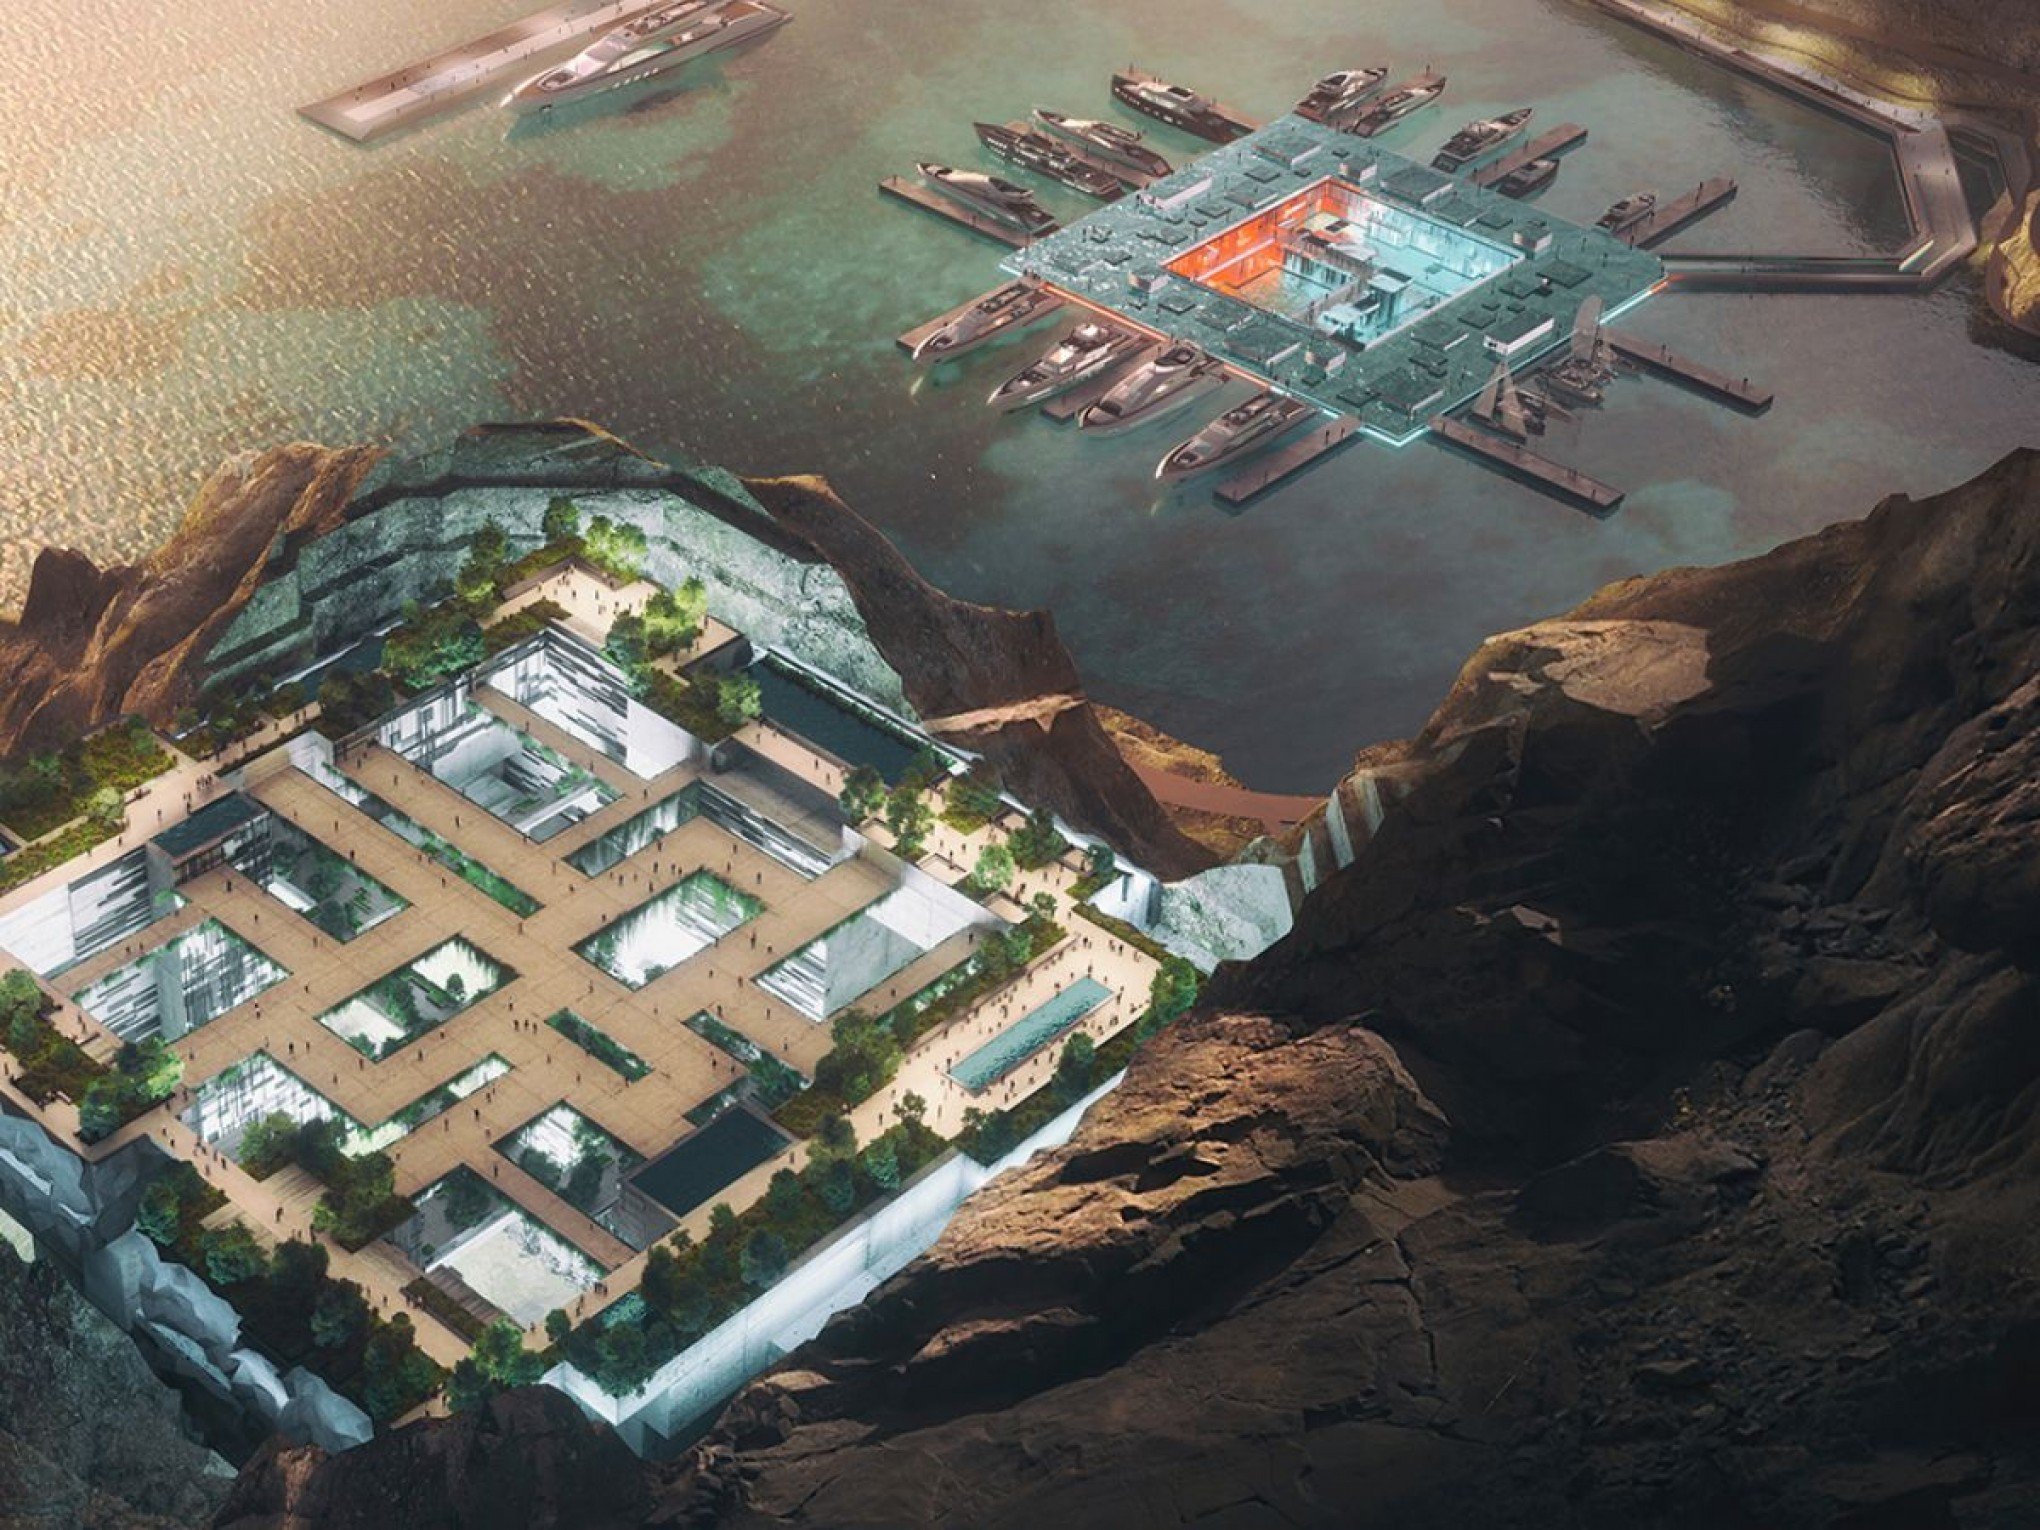 Comunidades subterrâneas tecnológicas e clube privativo, conheça projeto futurista na Arábia Saudita